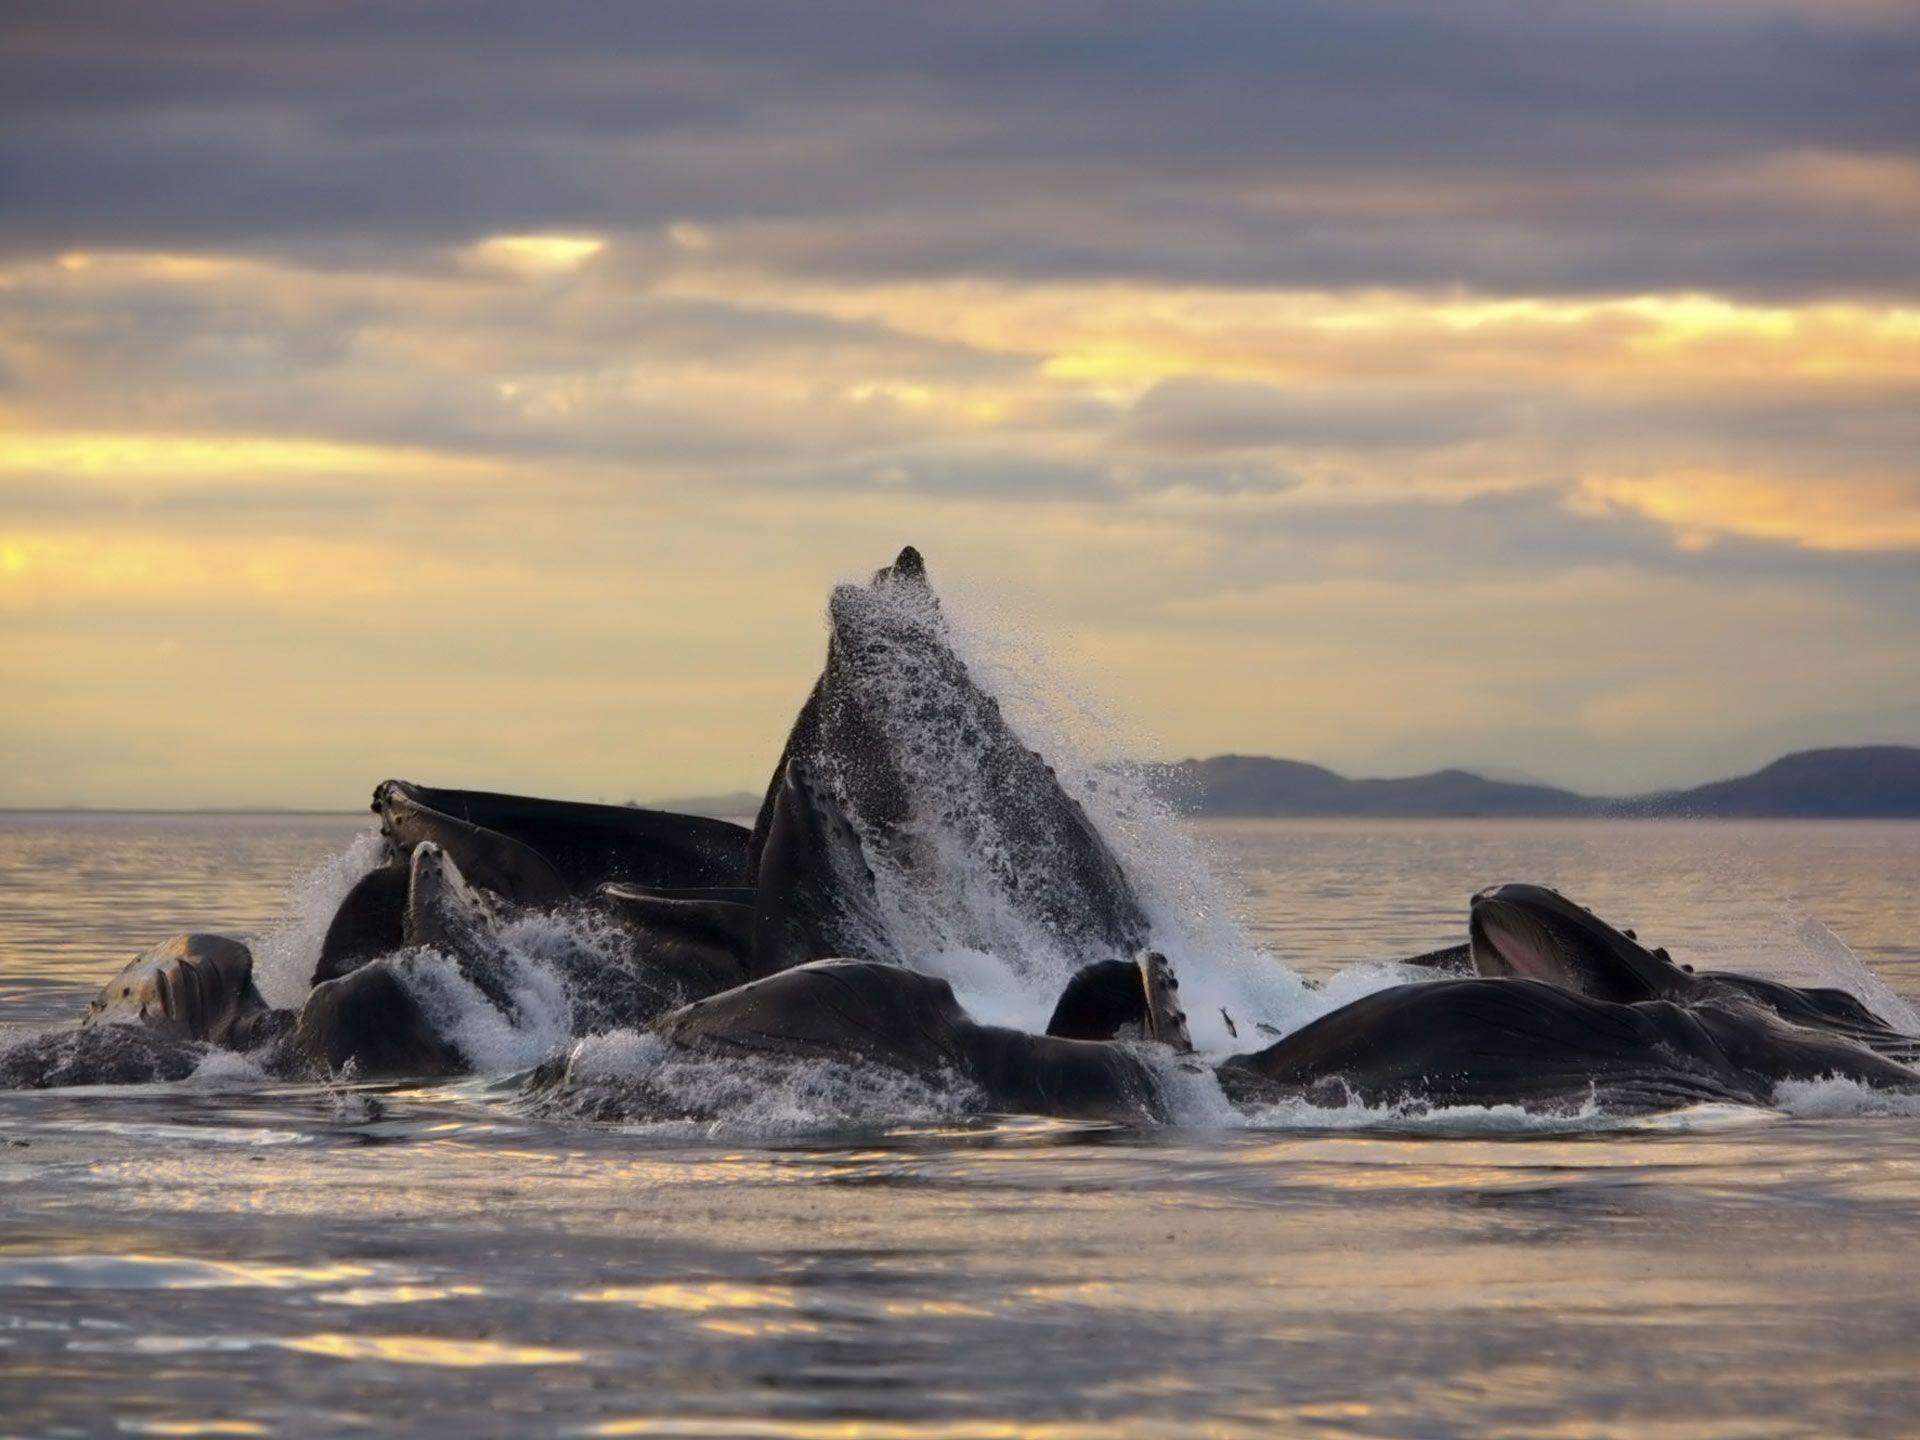 Desktop Wallpaper · Gallery · Animals · Whales Cetaceans, Humpback